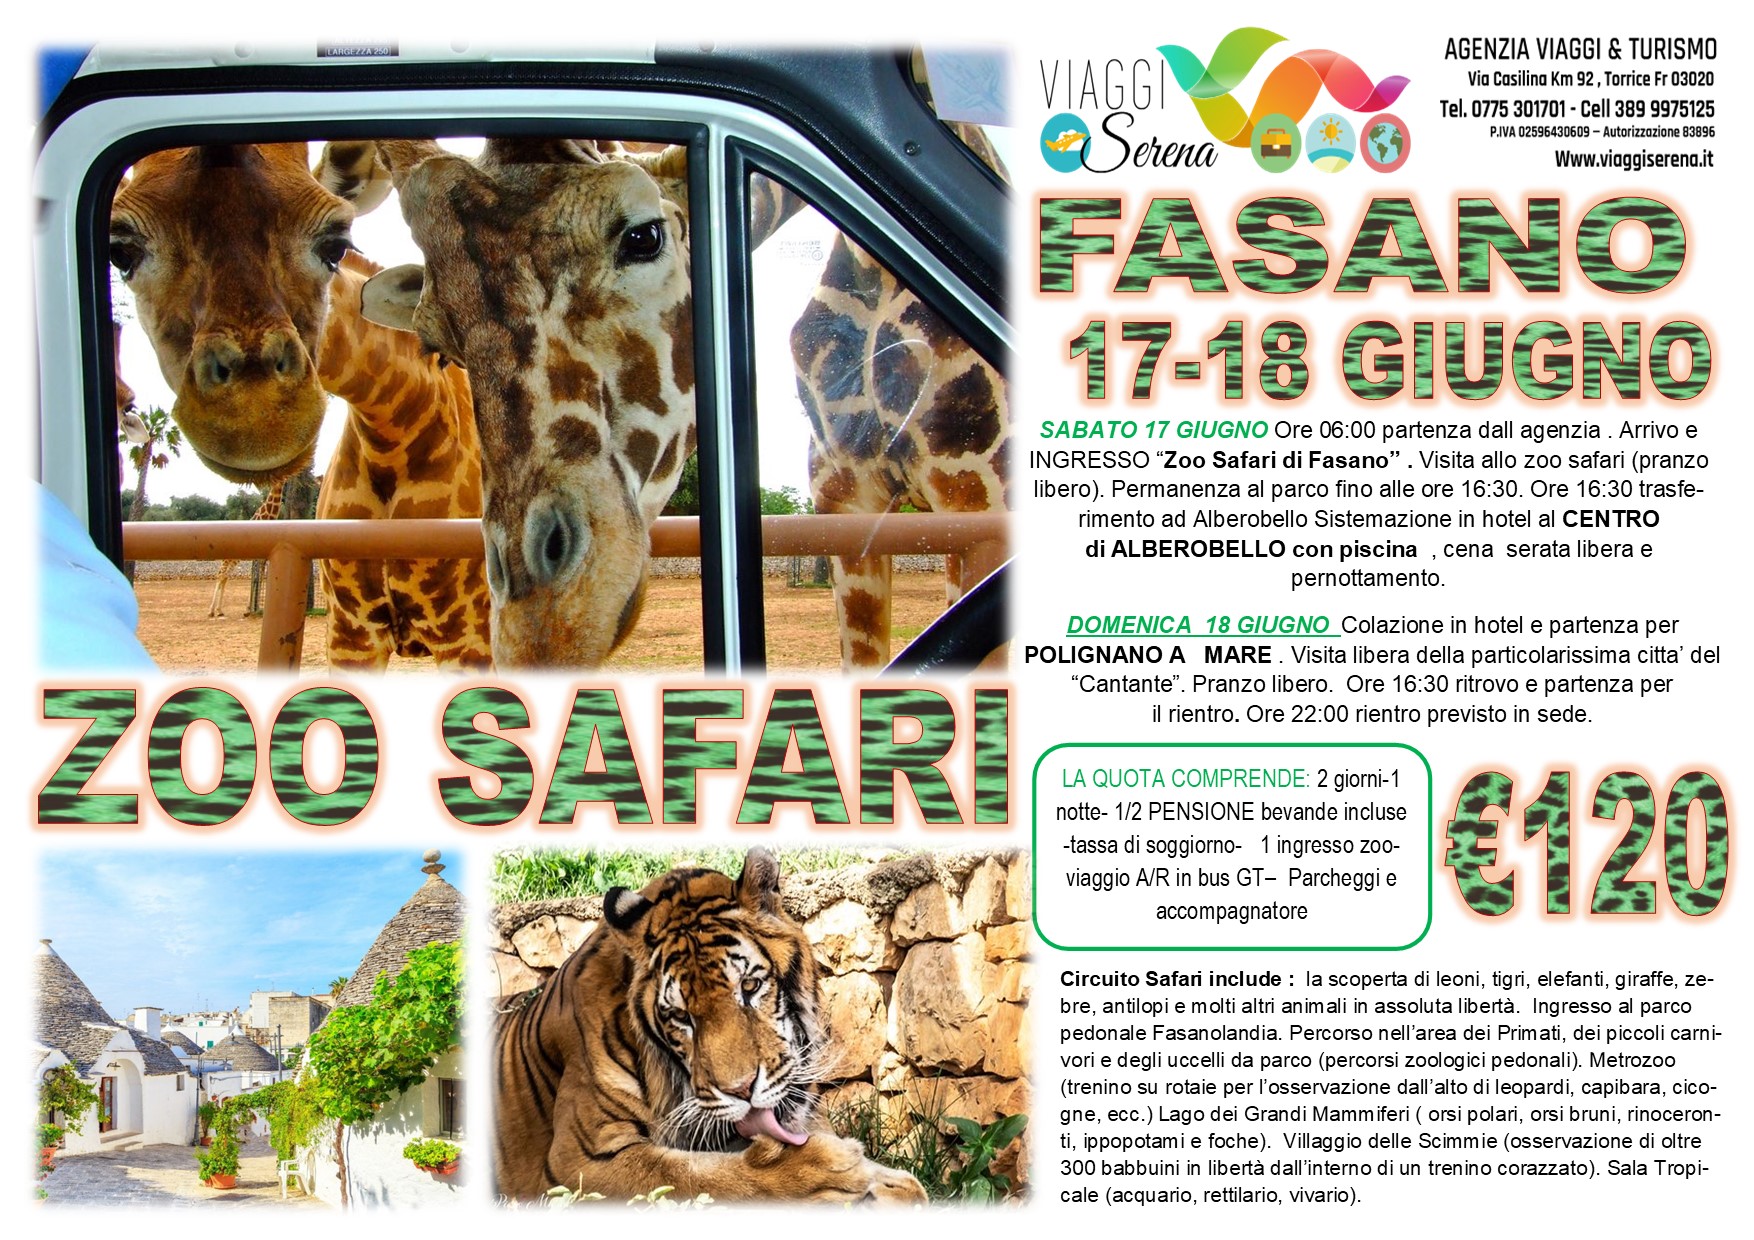 Viaggi di Gruppo: Polignano a mare, Alberobello & Zoo Safari 17-18 Giugno  € 120,00